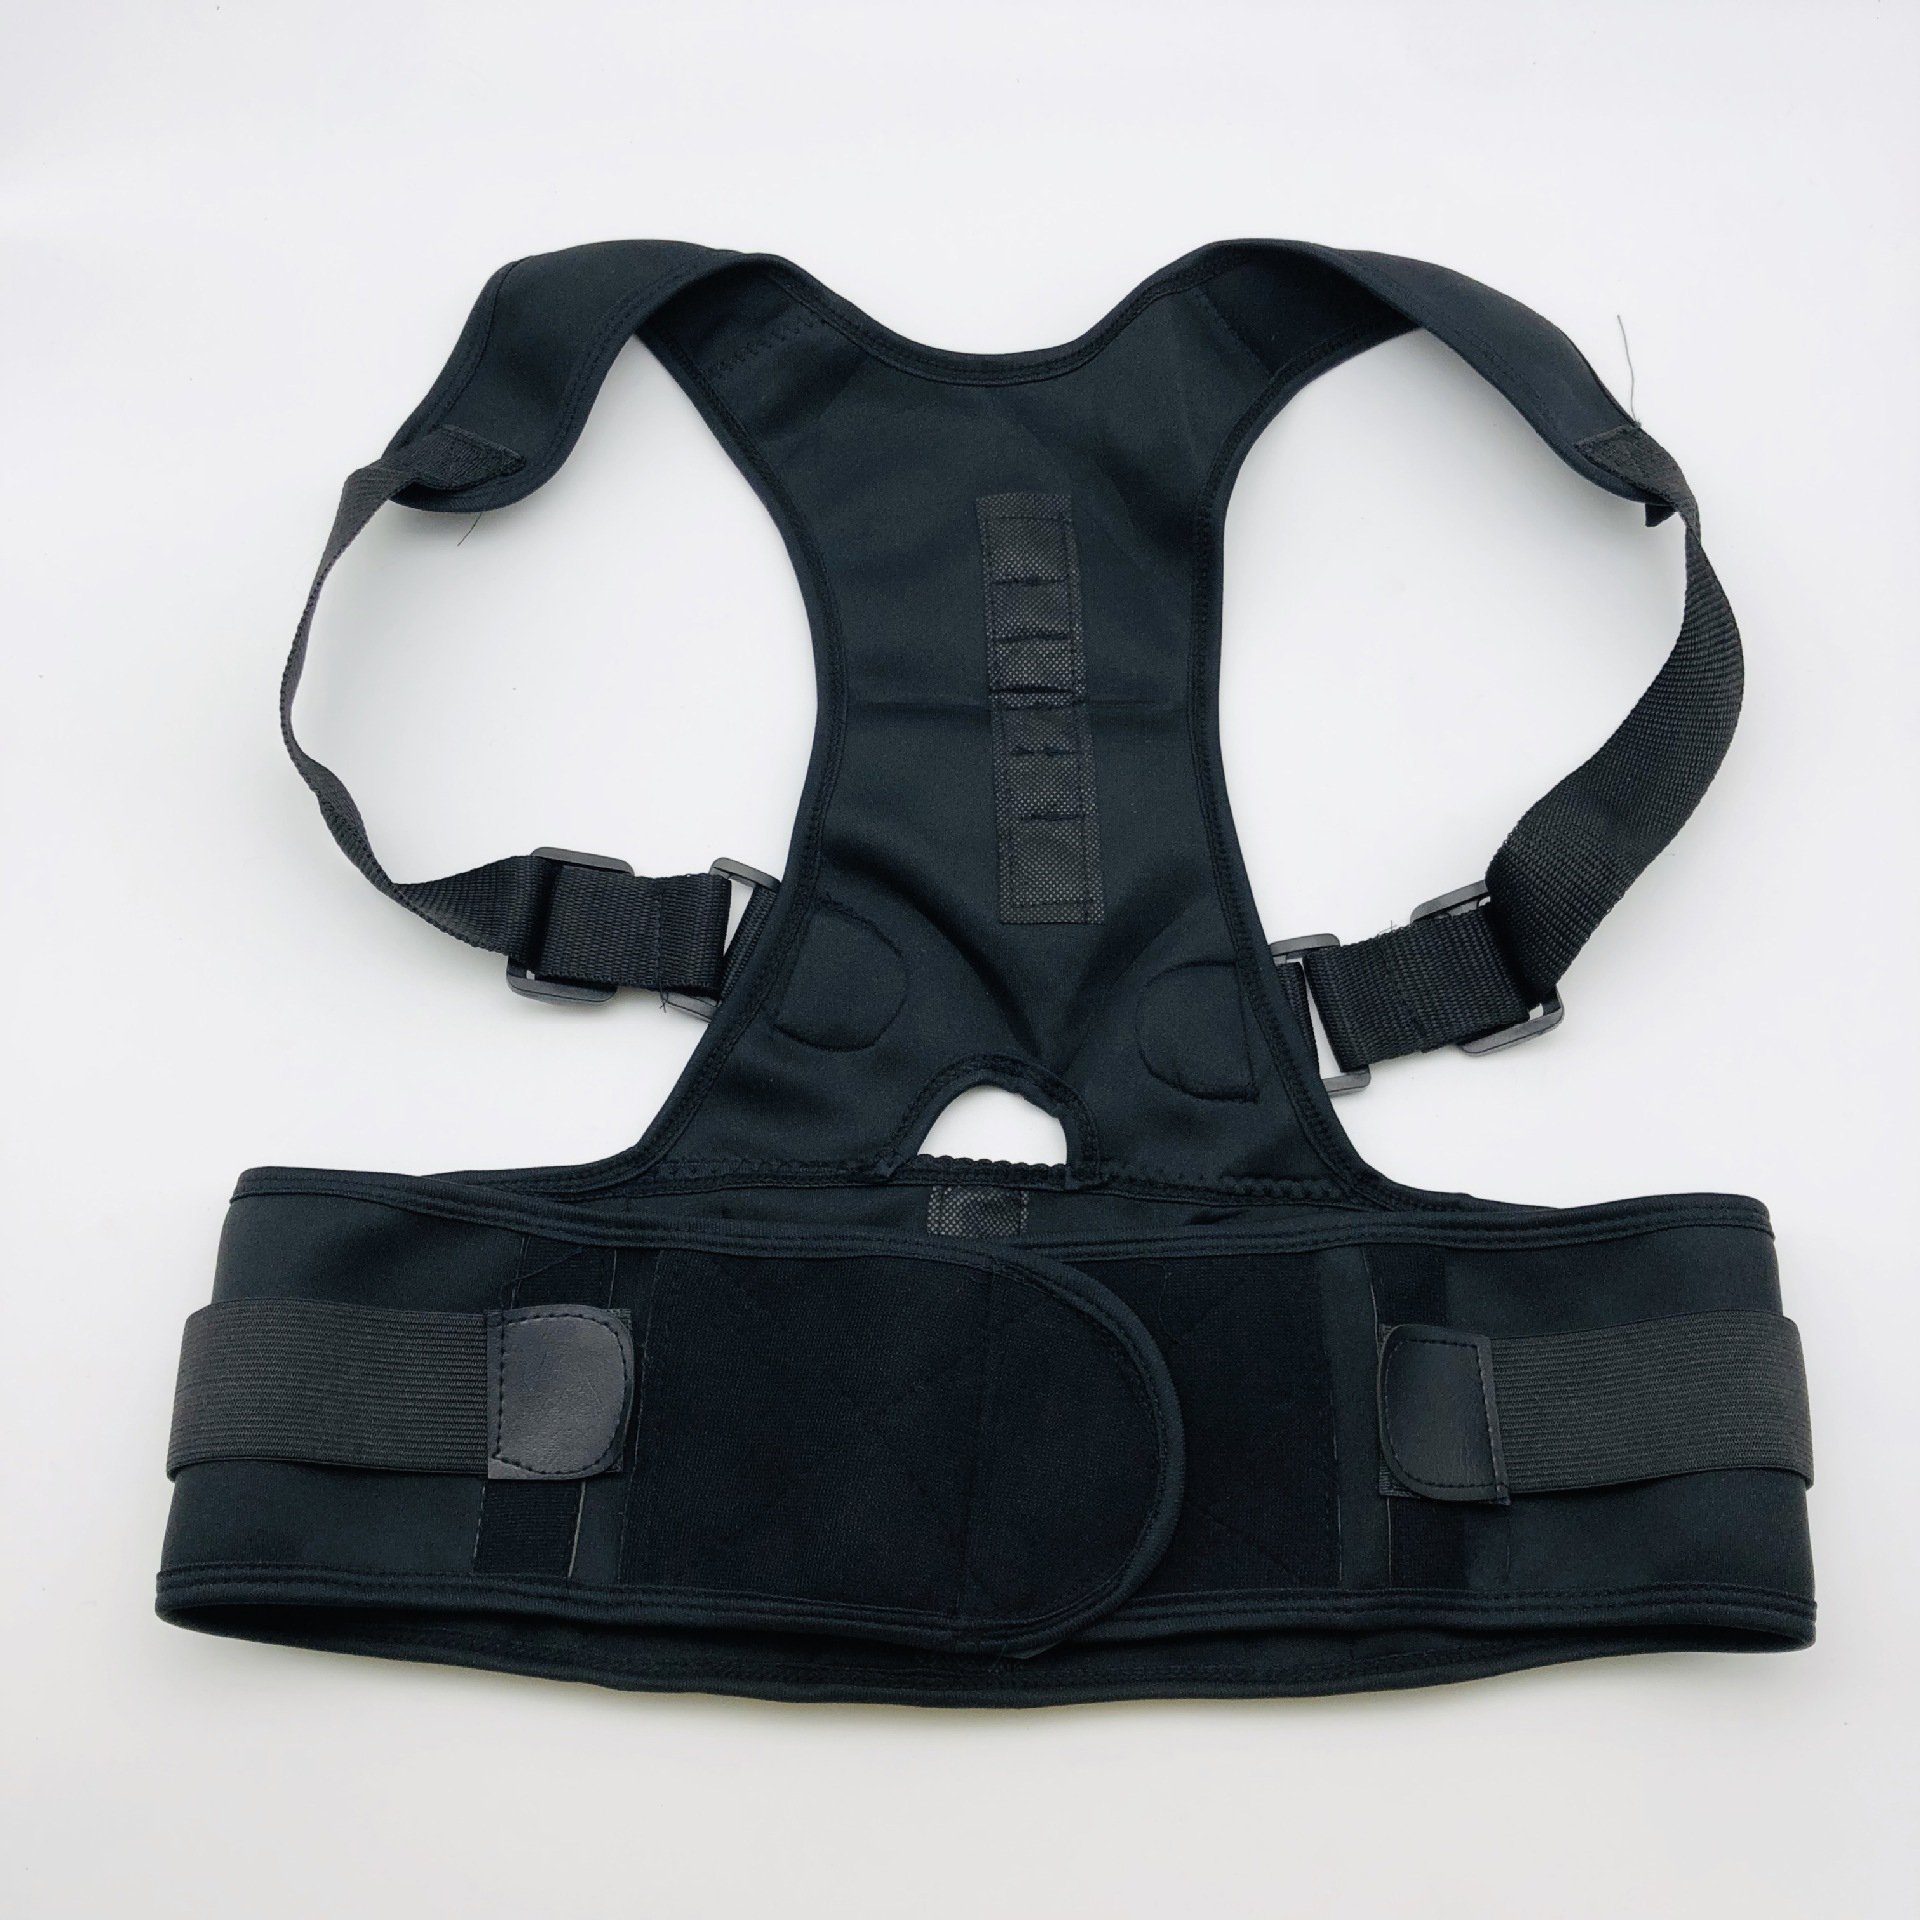 Band Correction Back verstellbar Rückenposition für Männer und Frauen Kyphosis Orthese zur Unterstützung der Wirbelsäule Haltungskorrektur des Rückens 